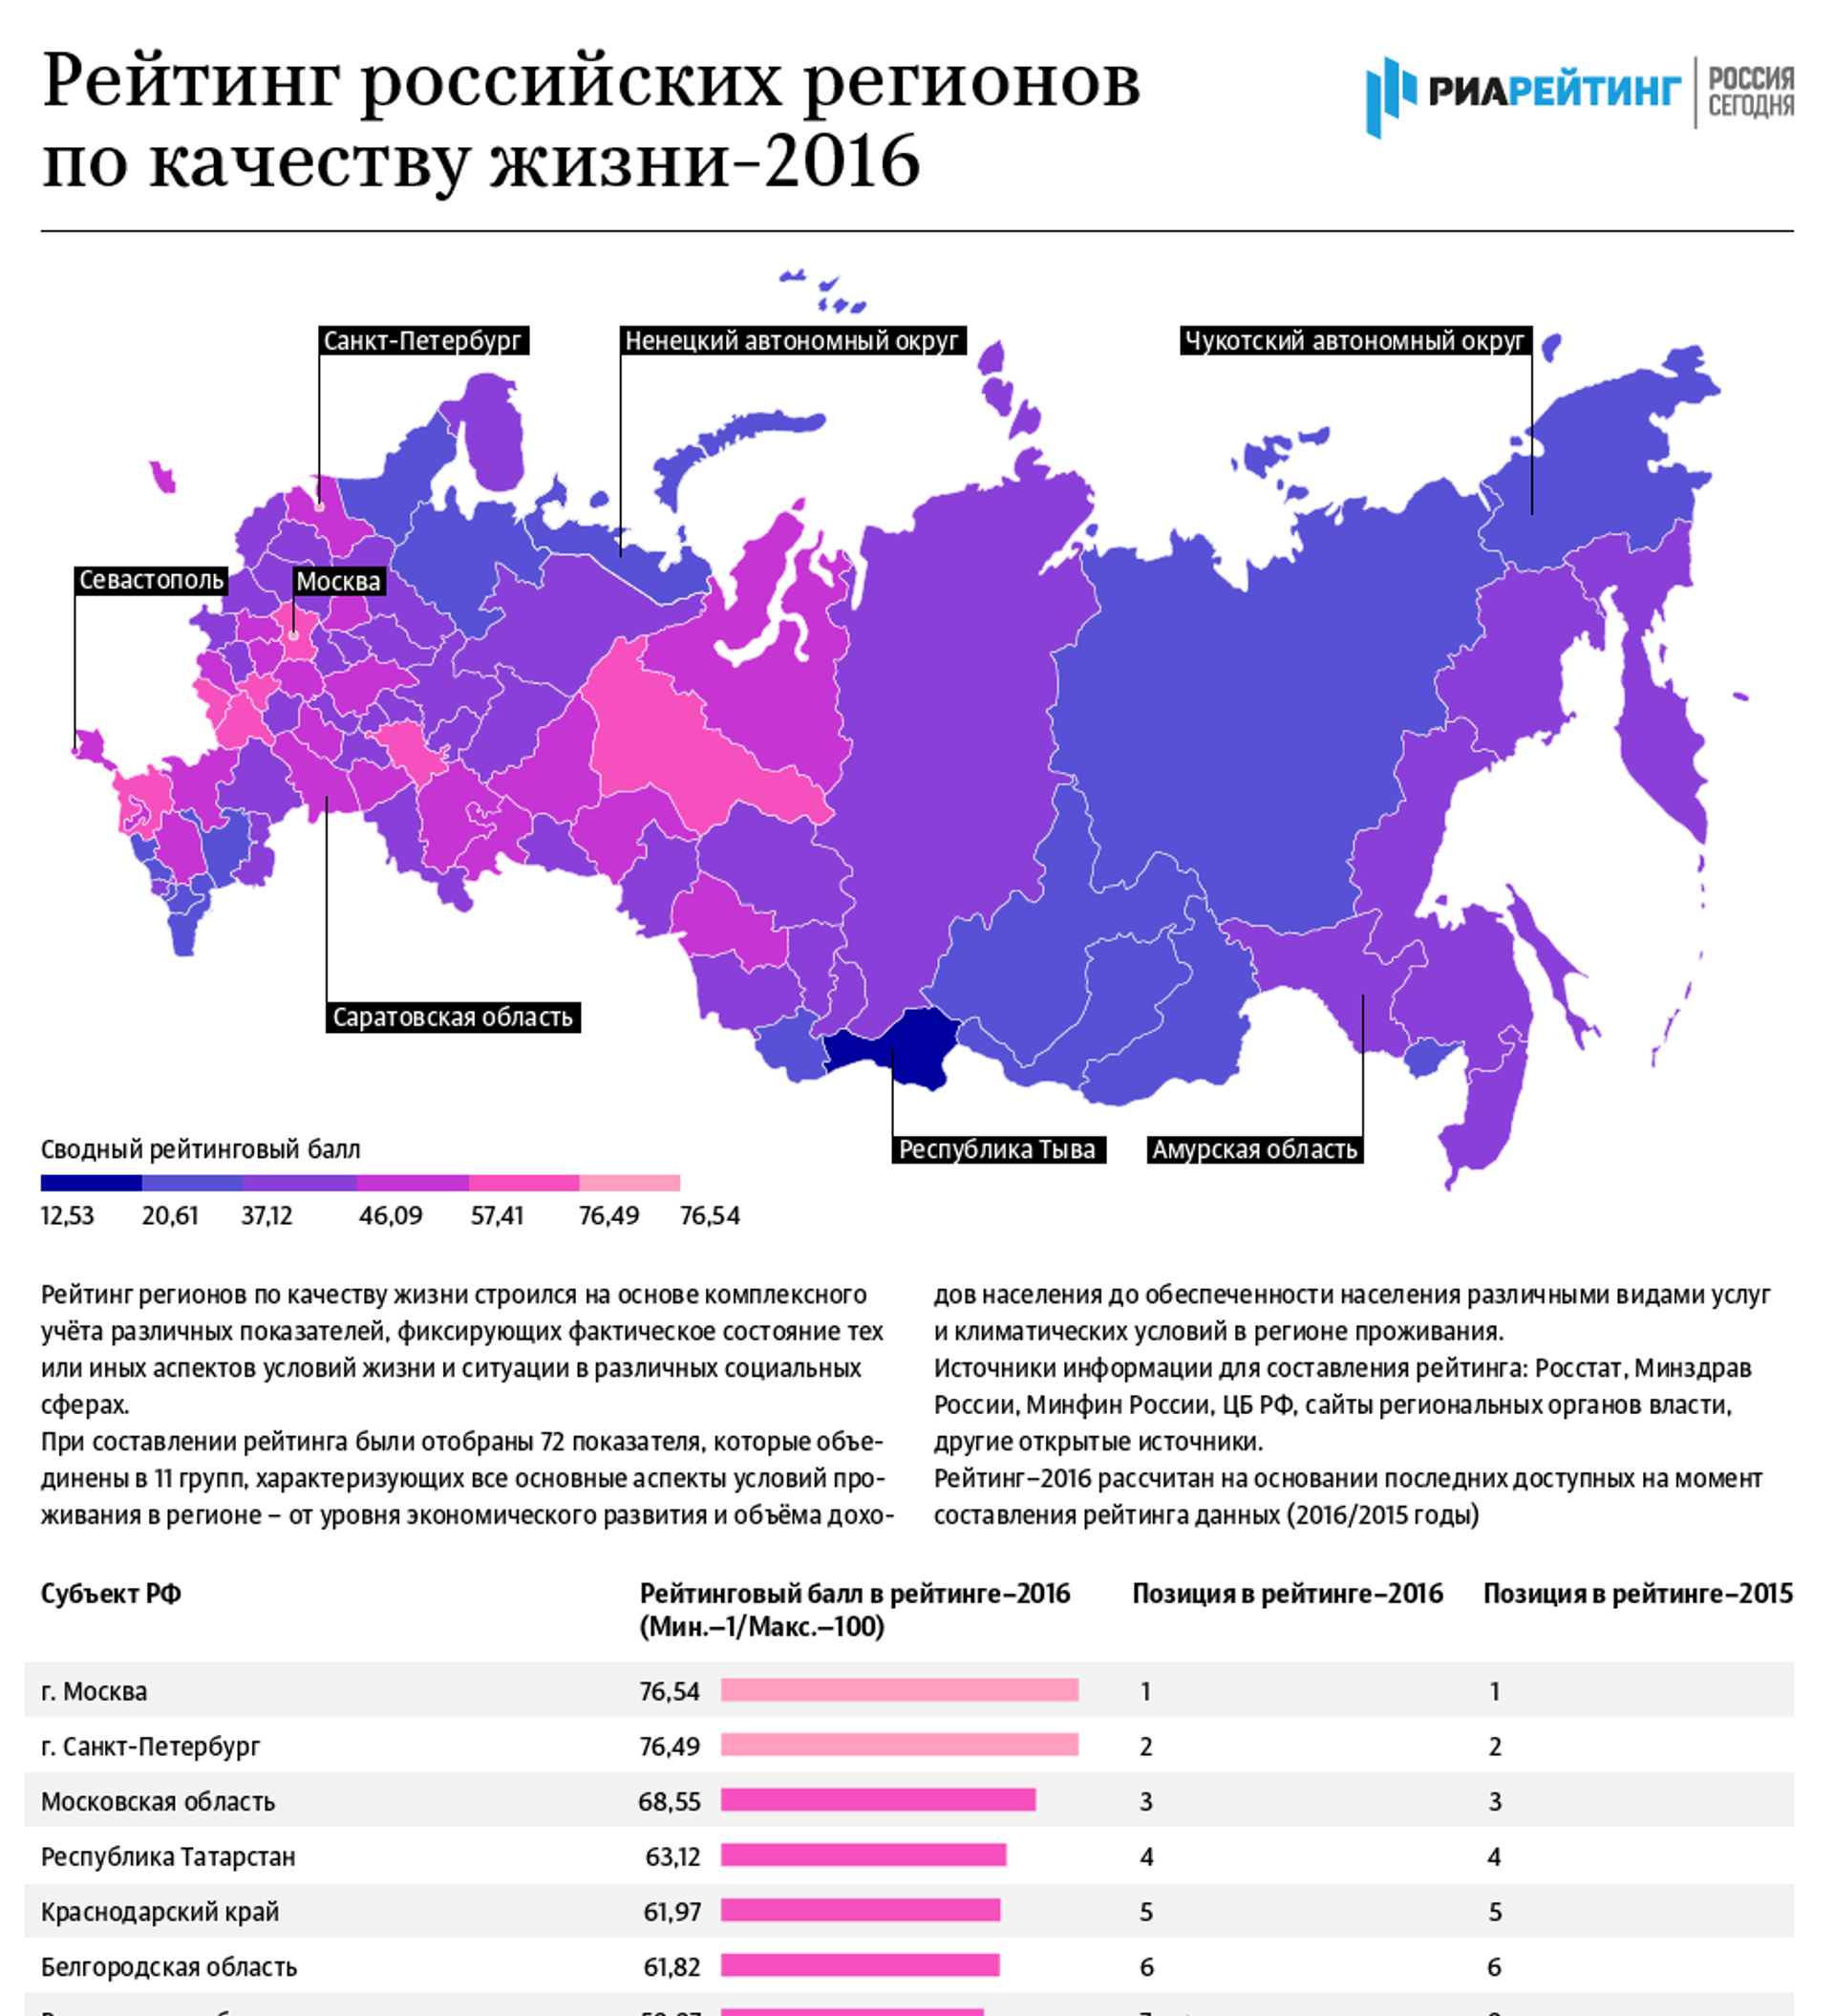 Развитие российских регионов